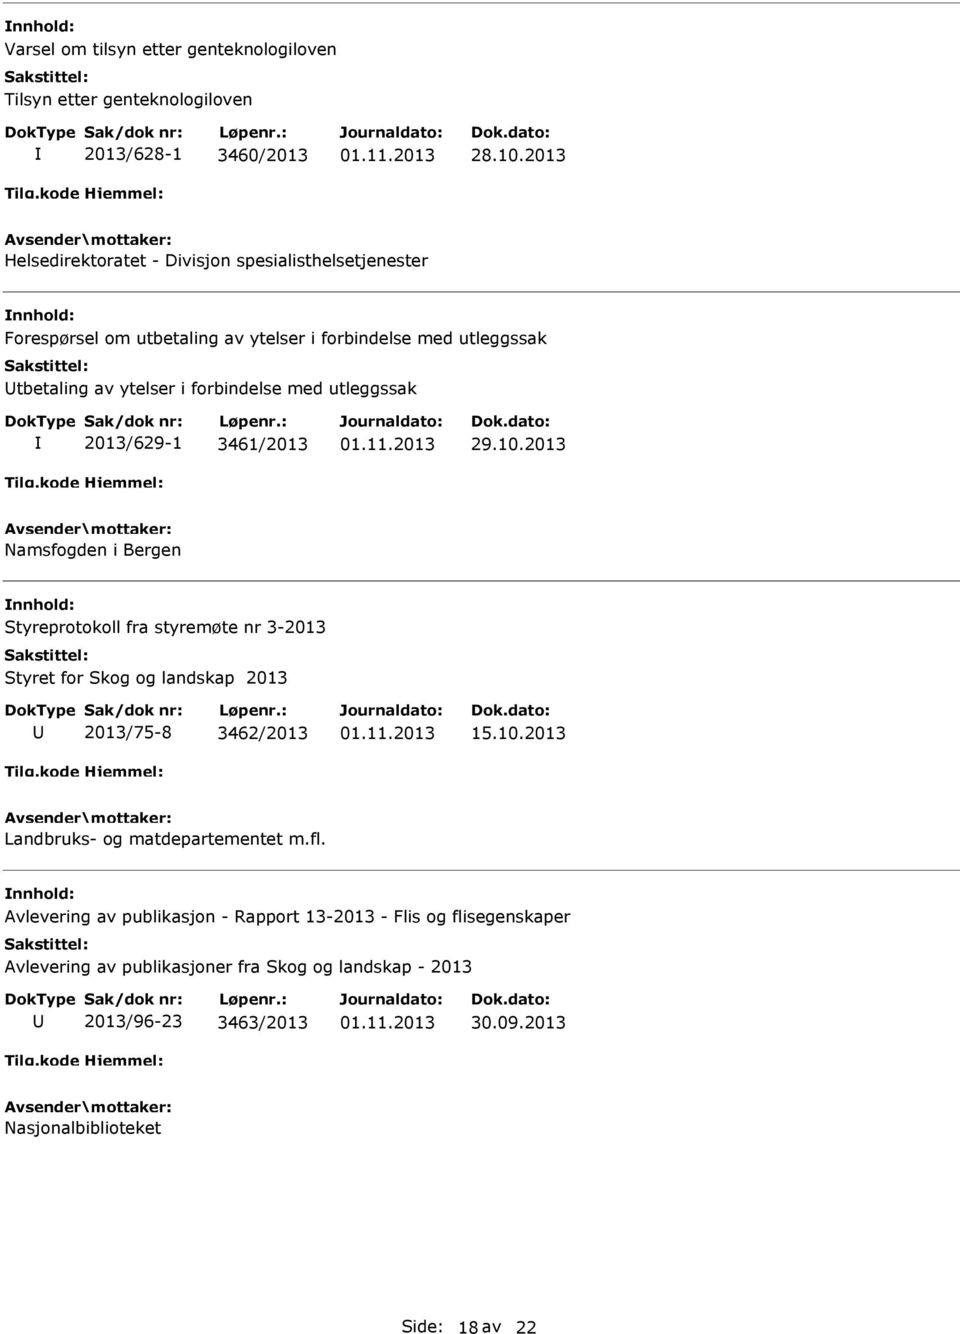 Styreprotokoll fra styremøte nr 3-2013 Styret for Skog og landskap 2013 2013/75-8 3462/2013 15.10.2013 Landbruks- og matdepartementet m.fl.